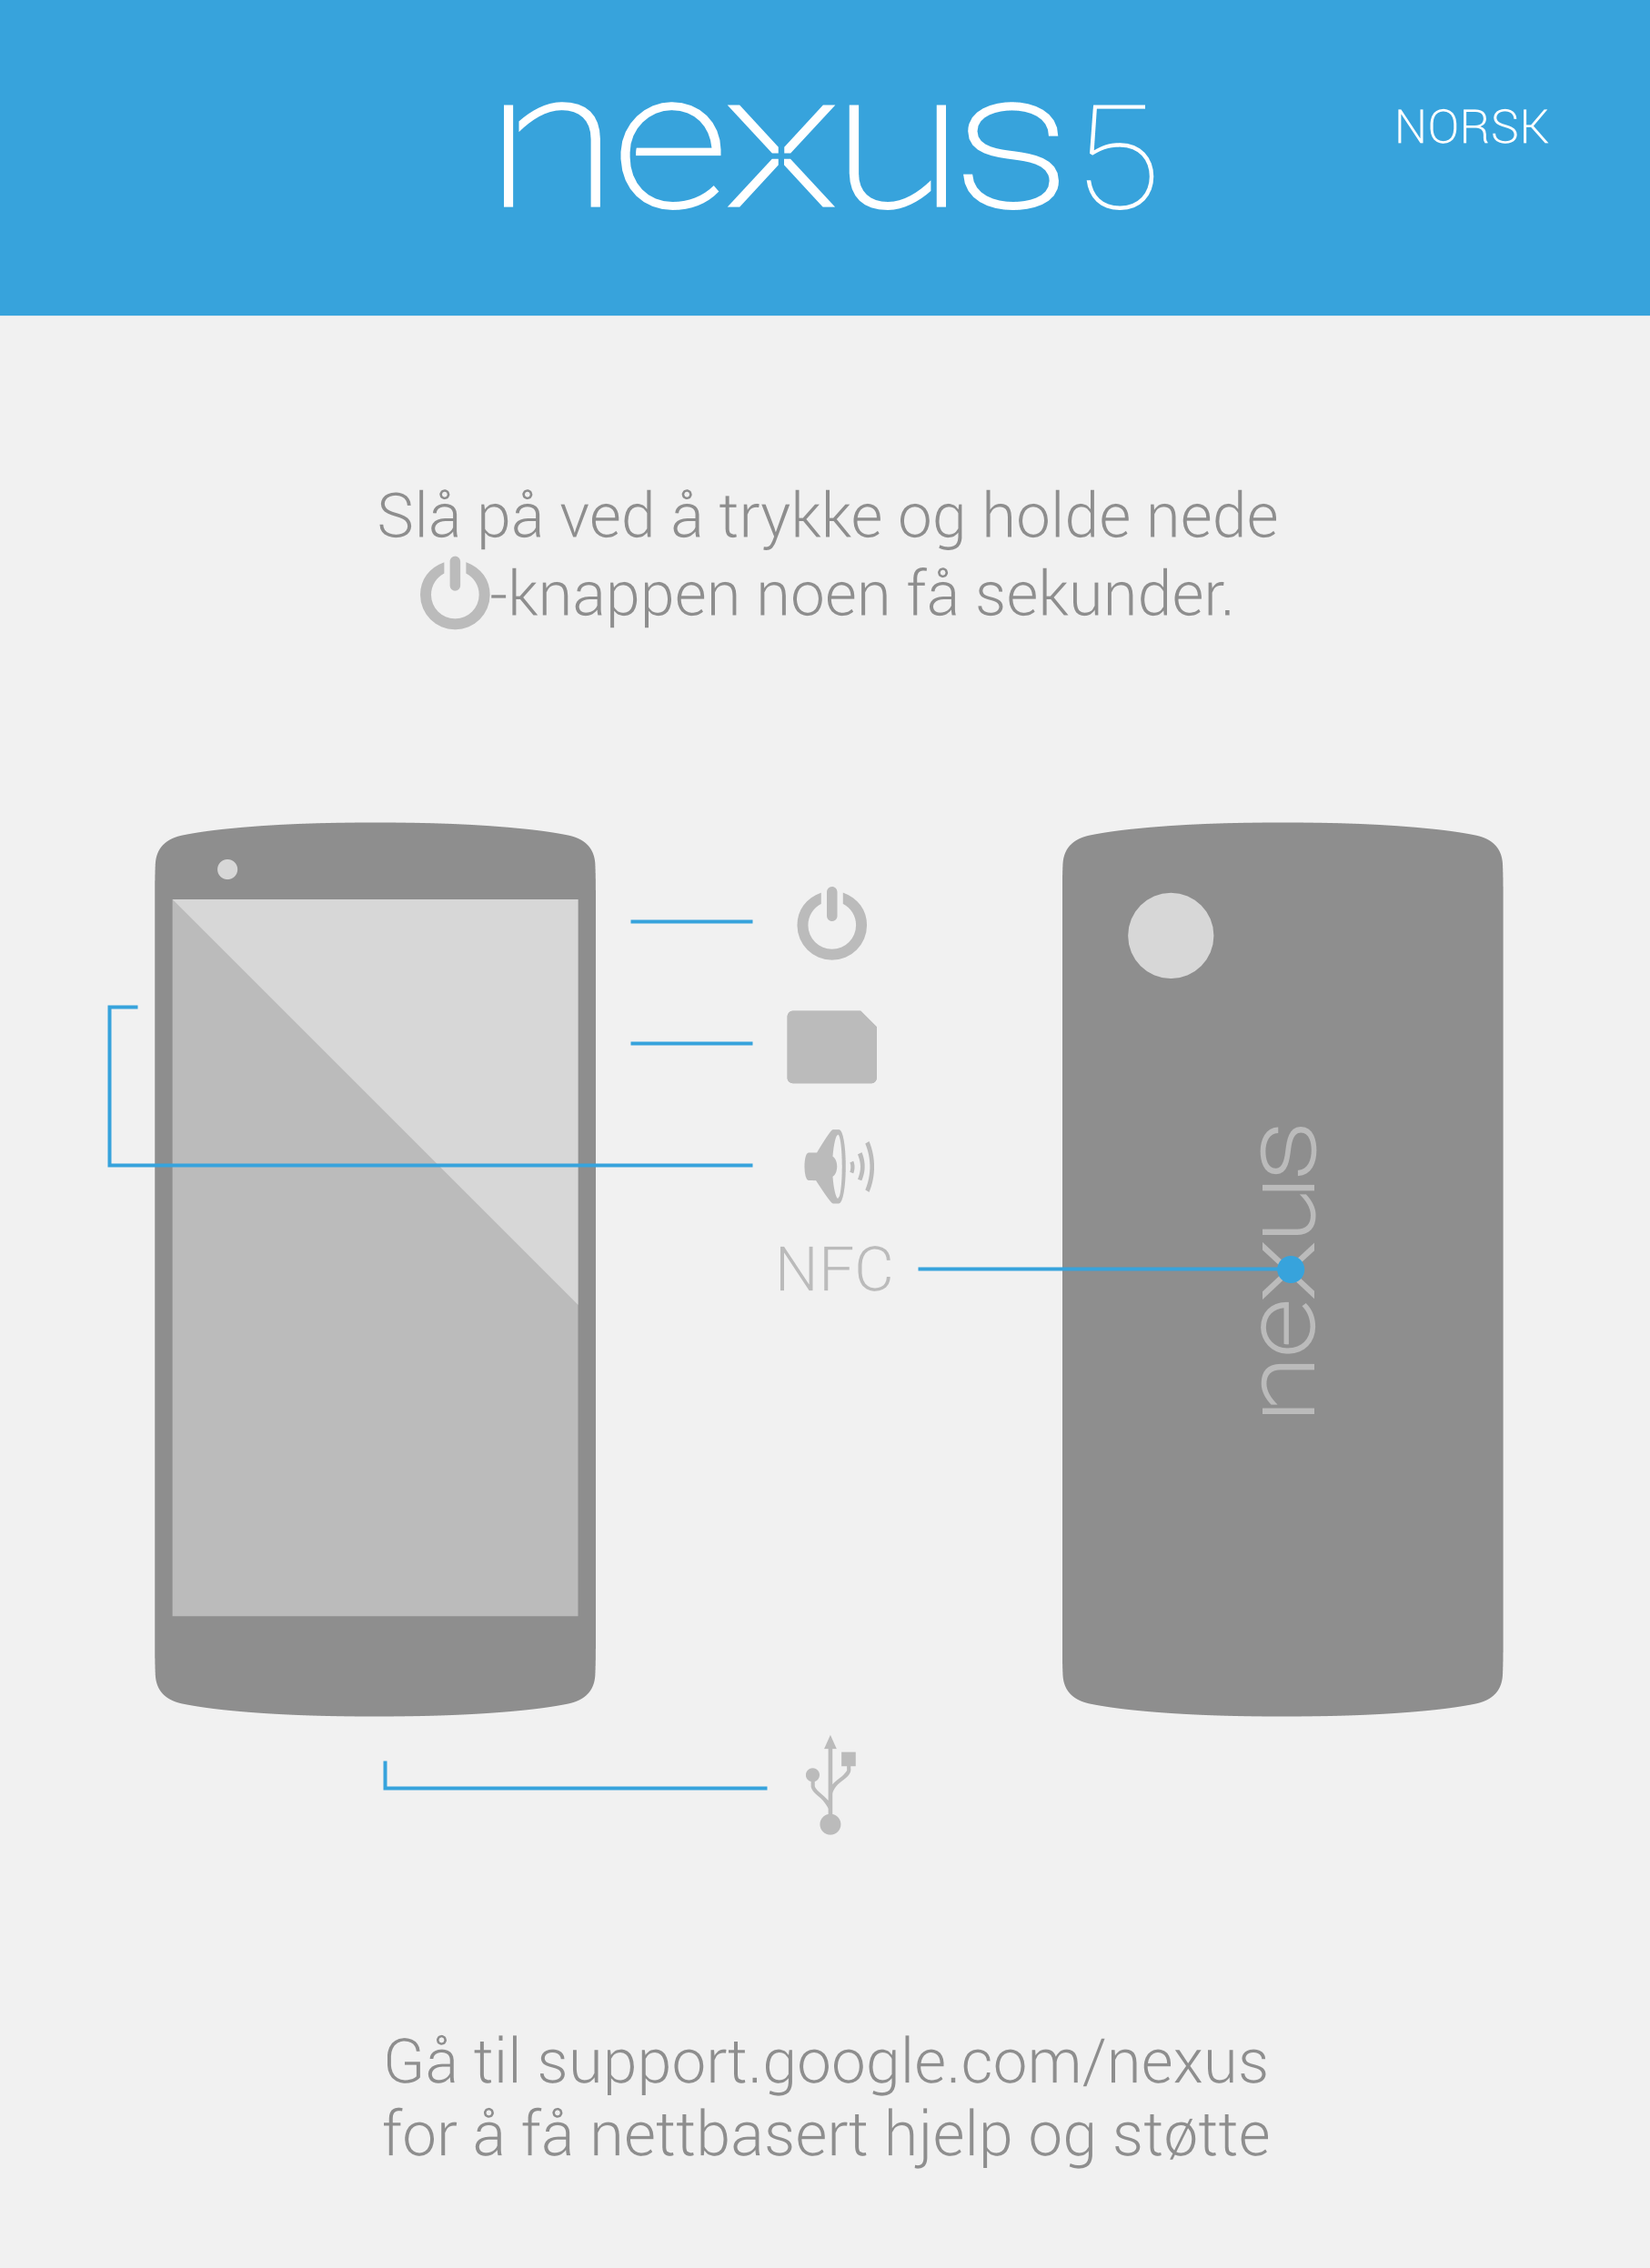 NORSK
Slå på ved å trykke og holde nede 
-knappen noen få sekunder.
NFC
Gå til support.google.com/nexus
for å få nettbasert hjel